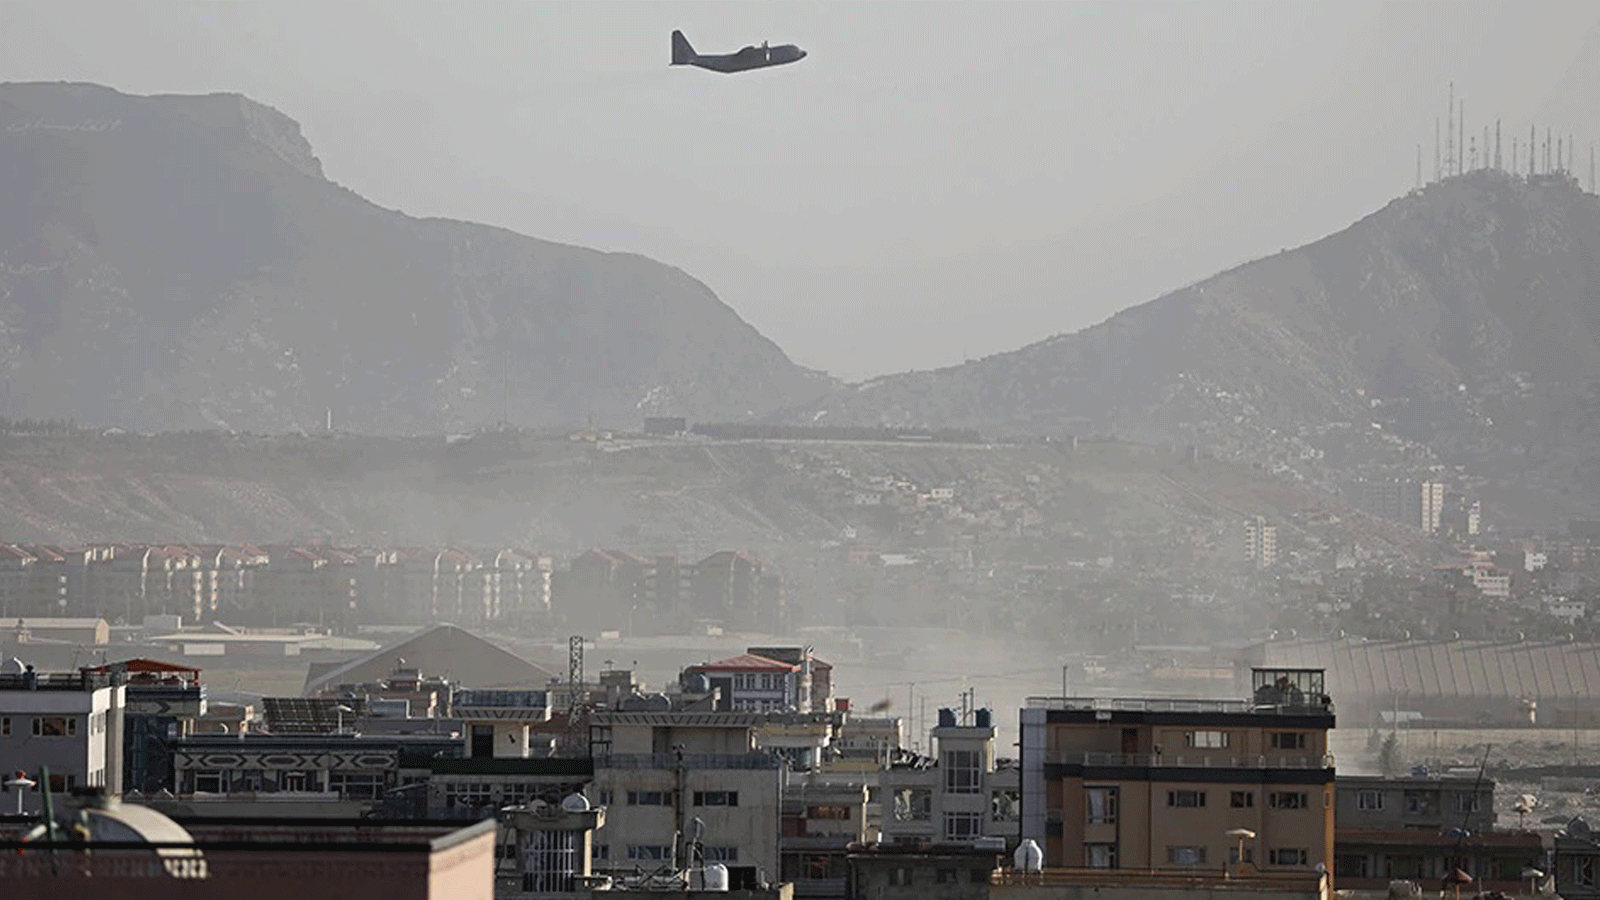 طائرة عسكرية تقلع من المطار العسكري في كابول في 27 آب/ أغسطس 2021، حيث قال البنتاغون إن إجلاء عشرات الآلاف من الأشخاص من أفغانستان لا يزال يواجه المزيد من الهجمات المحتملة مثل التفجير الذي أودى بحياة العشرات من الأشخاص خارج مطار كابول.